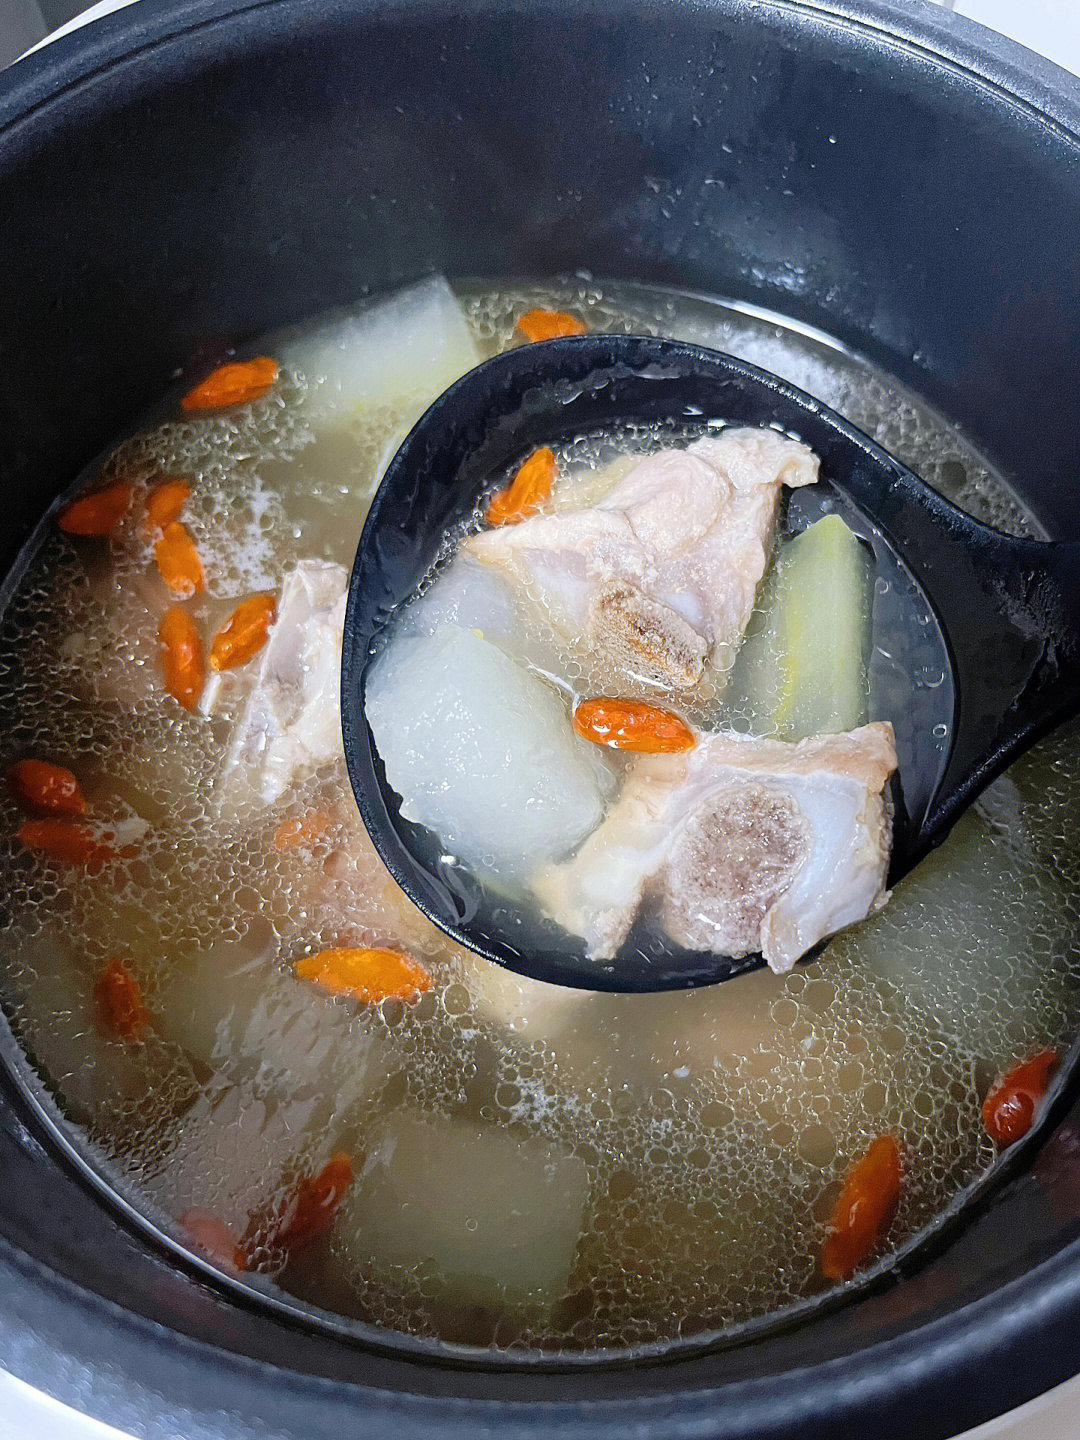 汤很鲜甜,炖进冬瓜清爽不油腻,全家人都可以吃～03材料:冬瓜,猪排骨